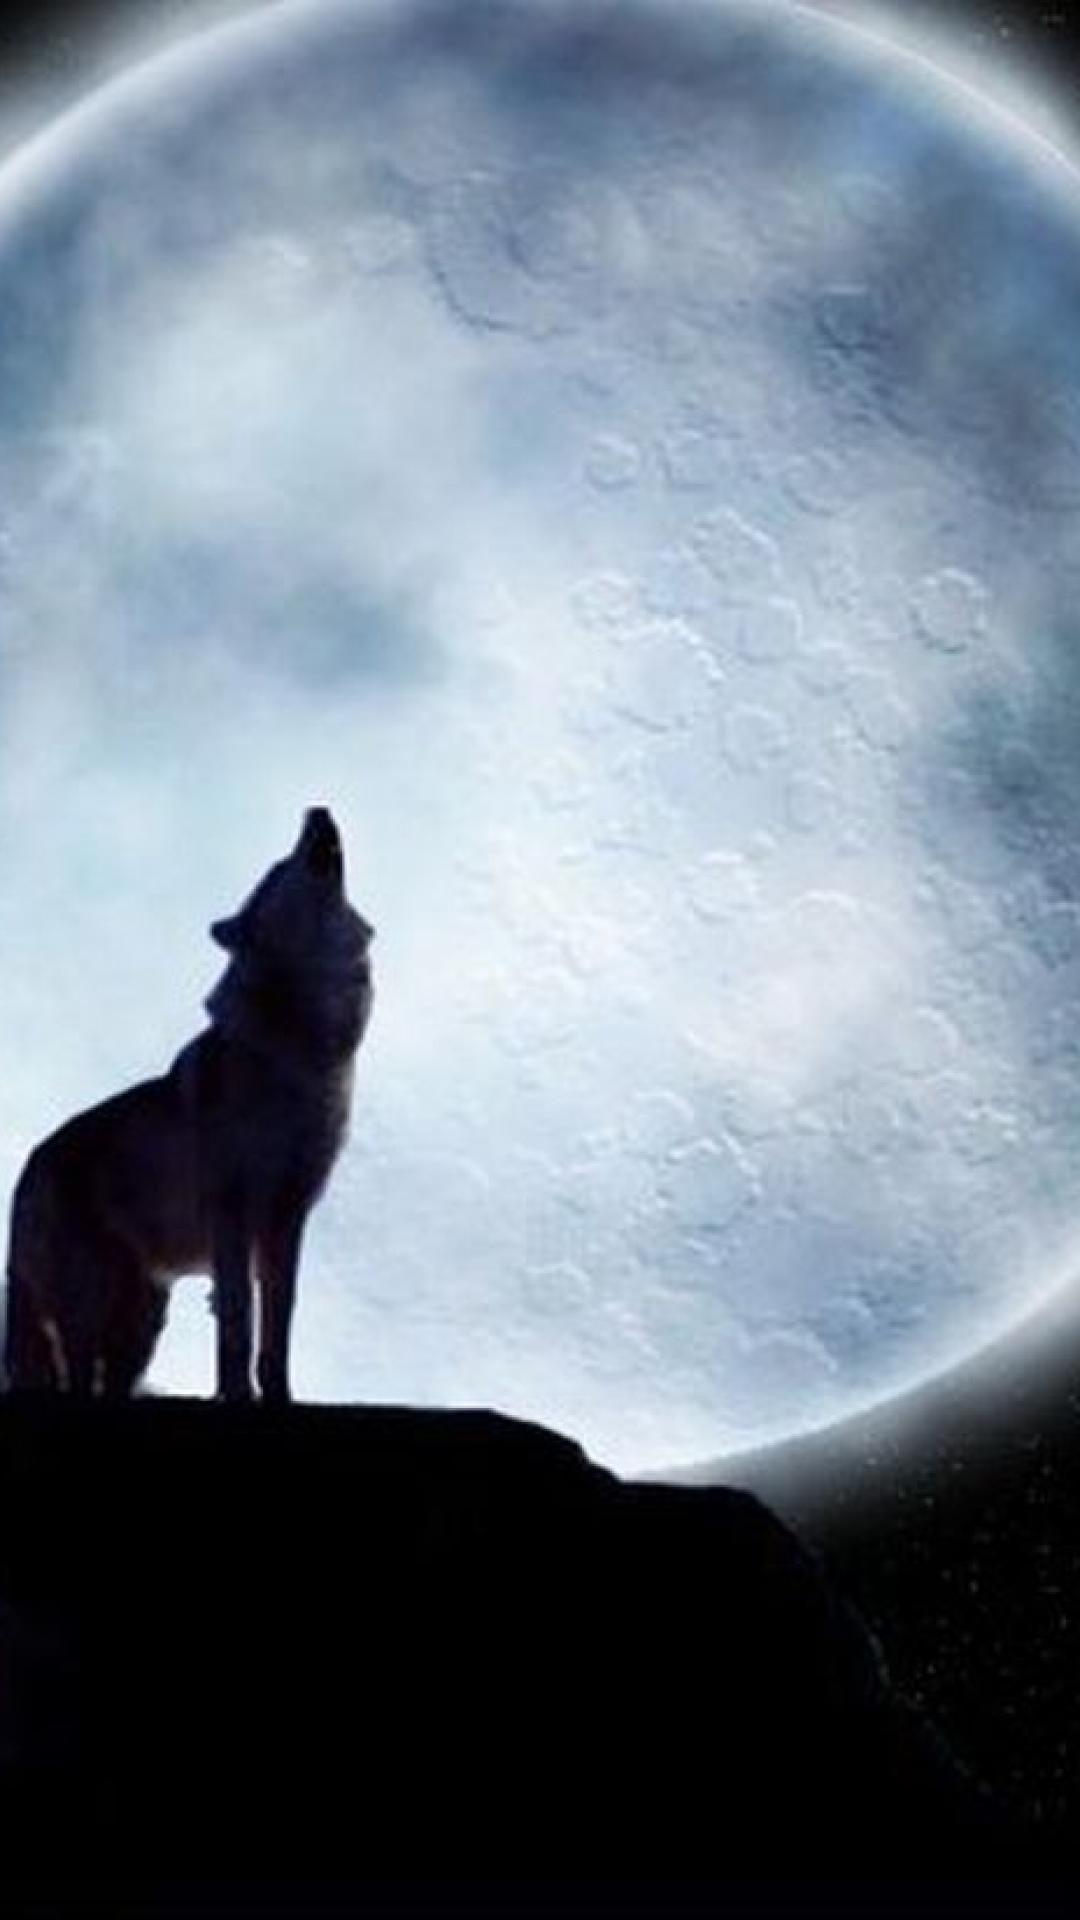 Lone Wolf Wallpaper: Một chú sói đơn độc rình rập giữa bóng tối sẽ truyền tải cho bạn một thông điệp về sự cô đơn và nghịch cảnh trong cuộc sống. Tuy nhiên, họ cũng mang đến sự dũng cảm và sự độc lập, tạo nên một sức mạnh riêng và đặc biệt. Xem hình nền Lone Wolf Wallpaper để tìm hiểu thêm về thông điệp đó.